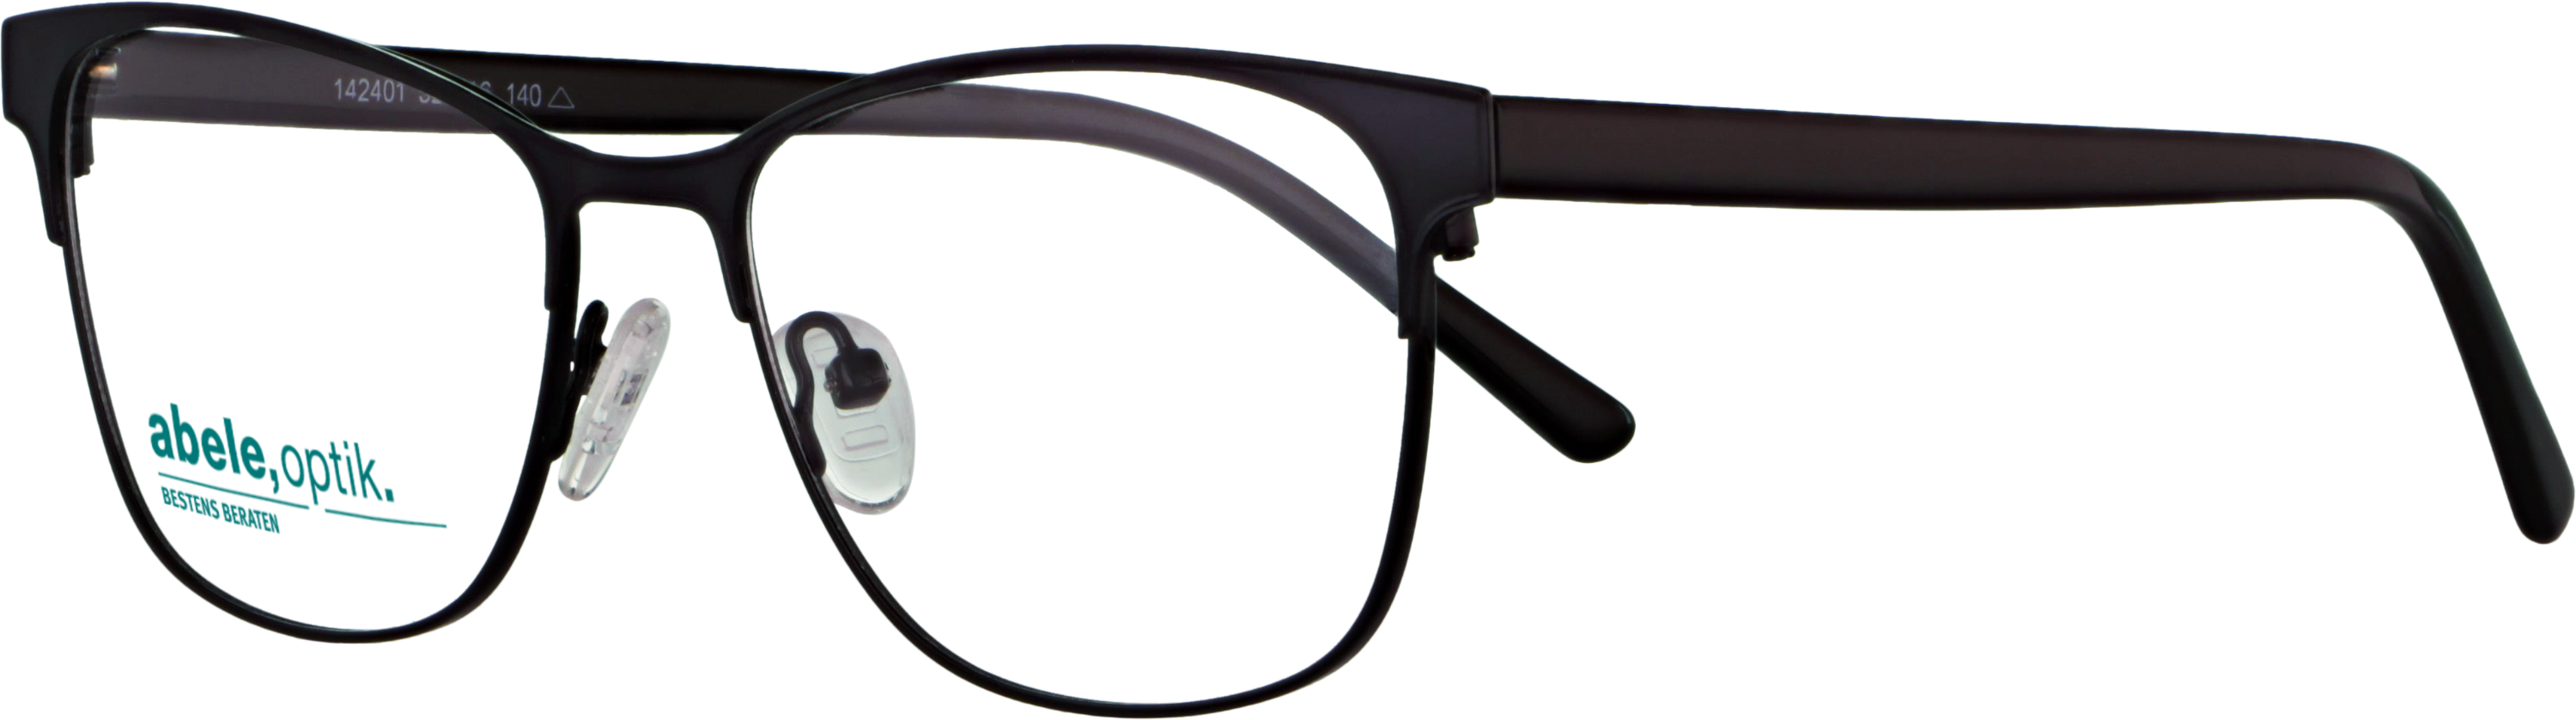 Das Bild zeigt die Korrektionsbrille 142401 von der Marke Abele Optik in schwarz.